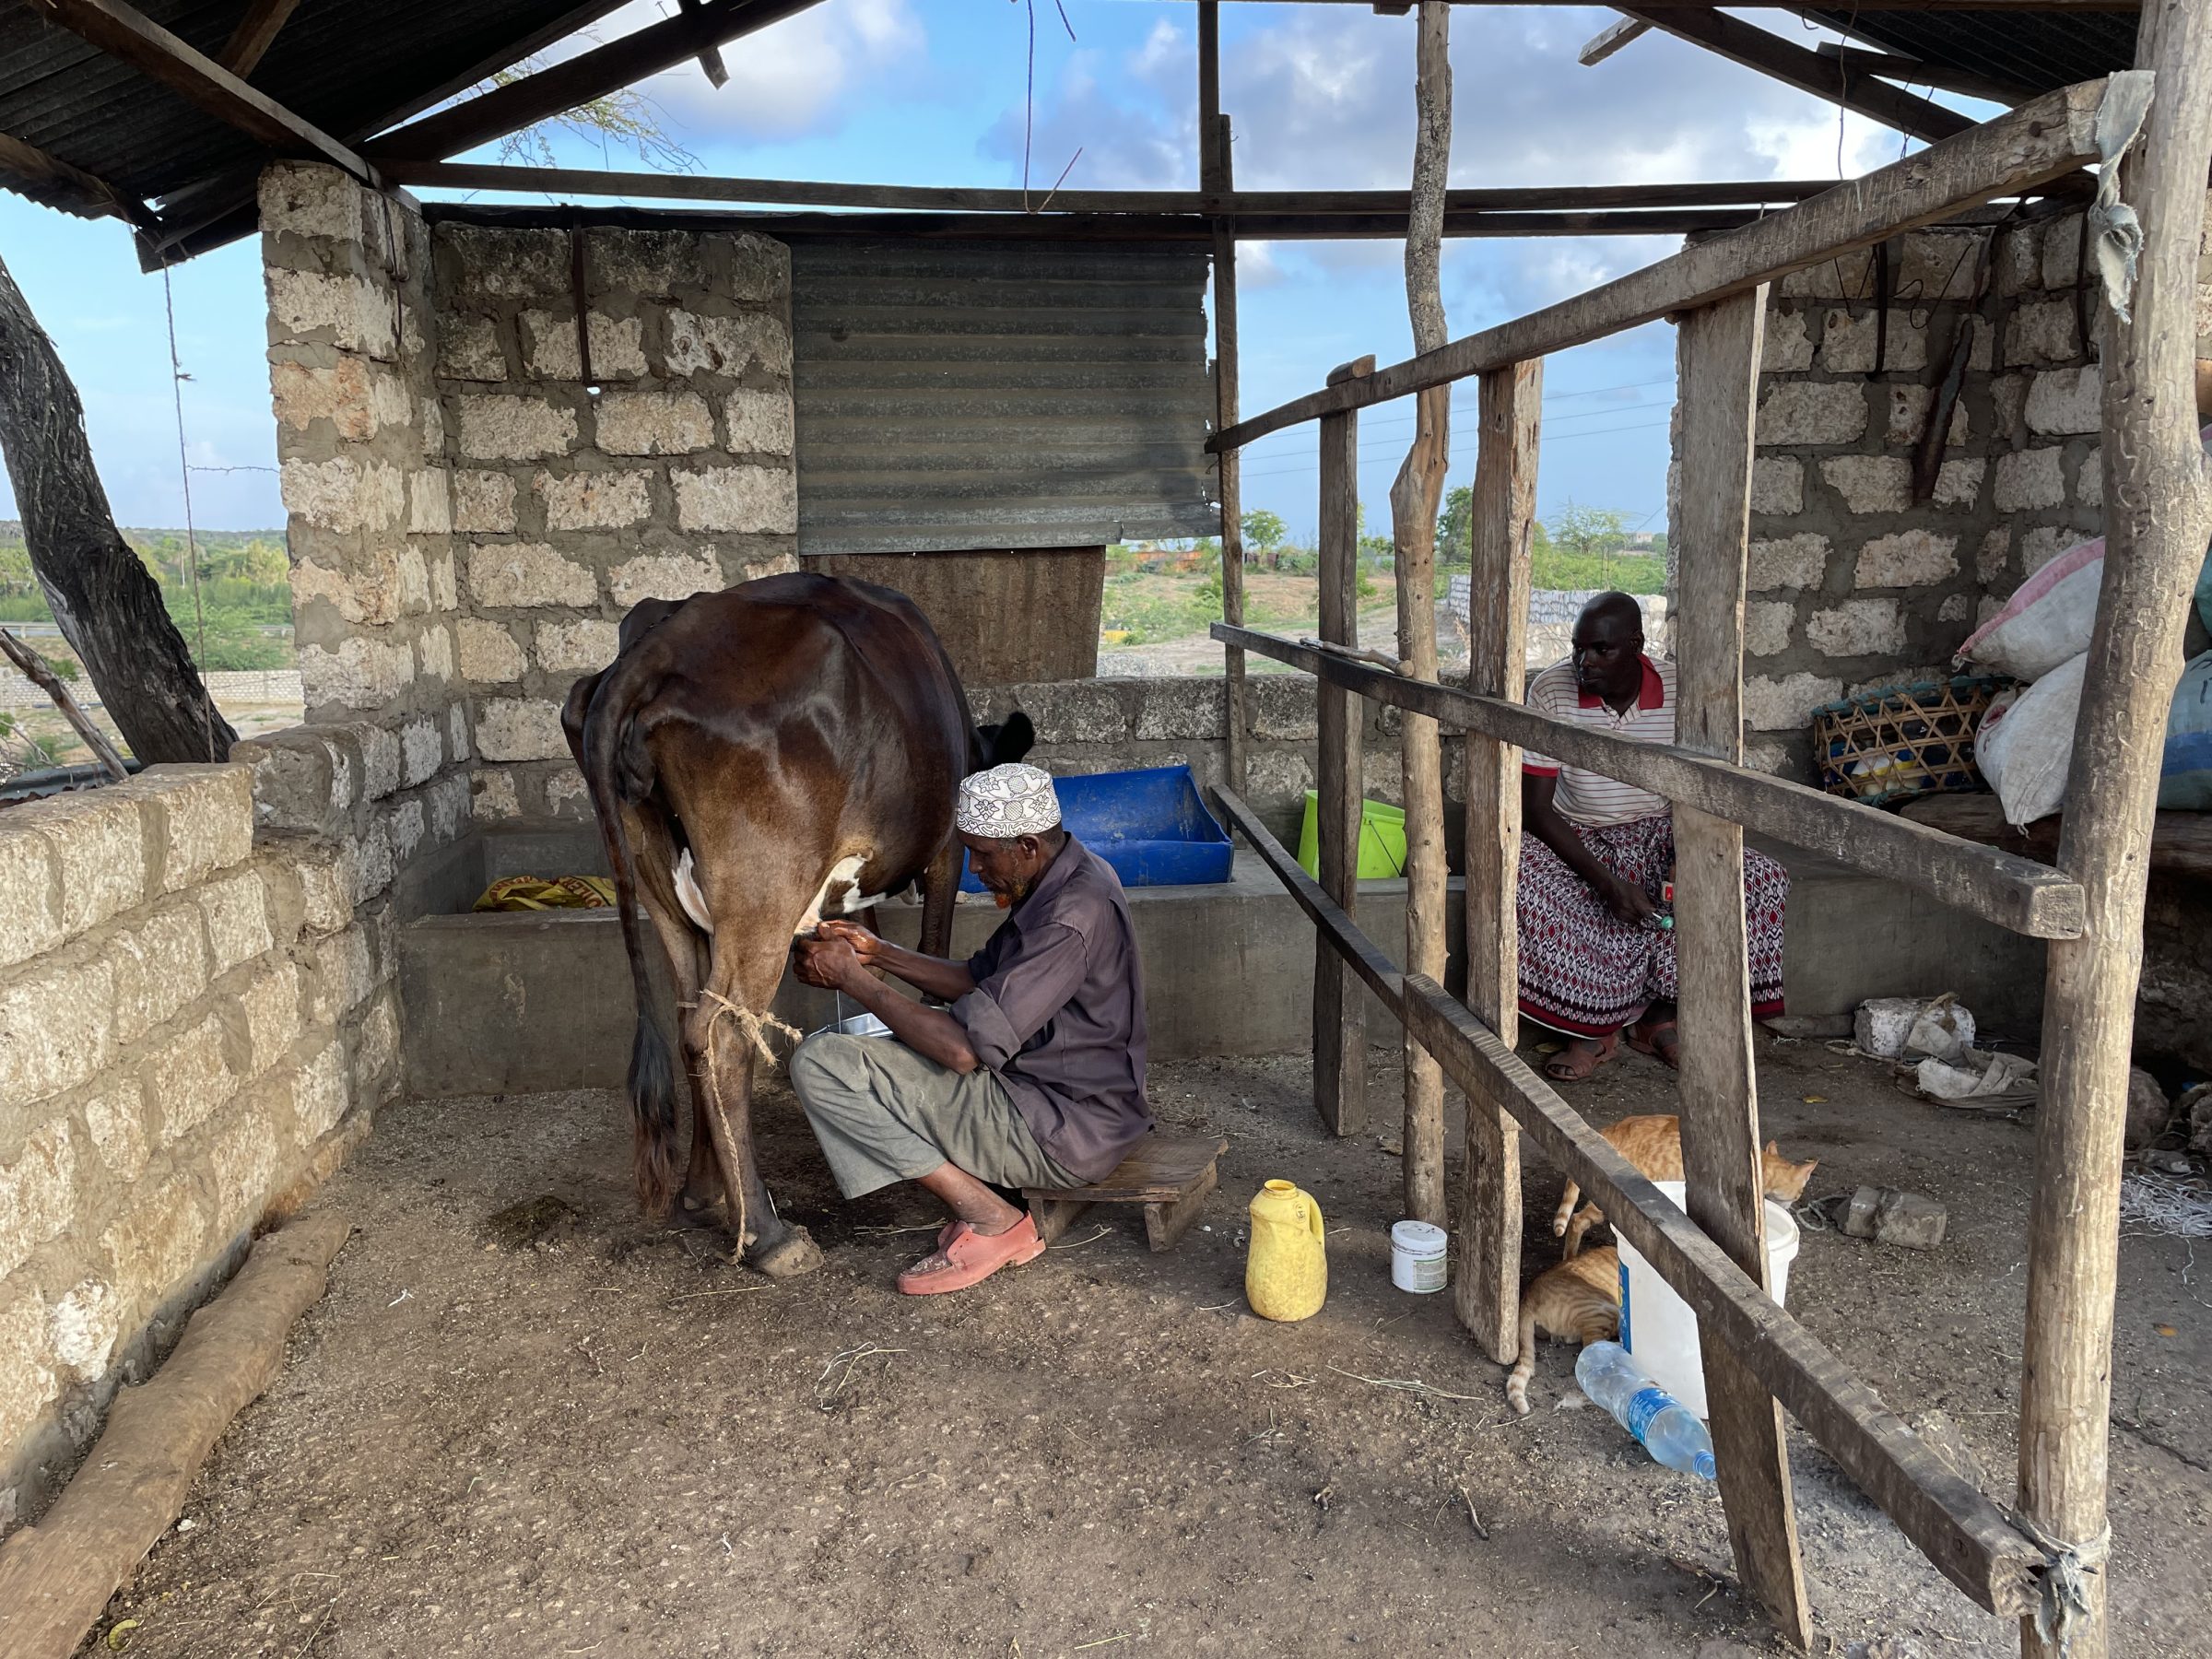 Mohamed doi swoje krowy w Malindi w Kenii